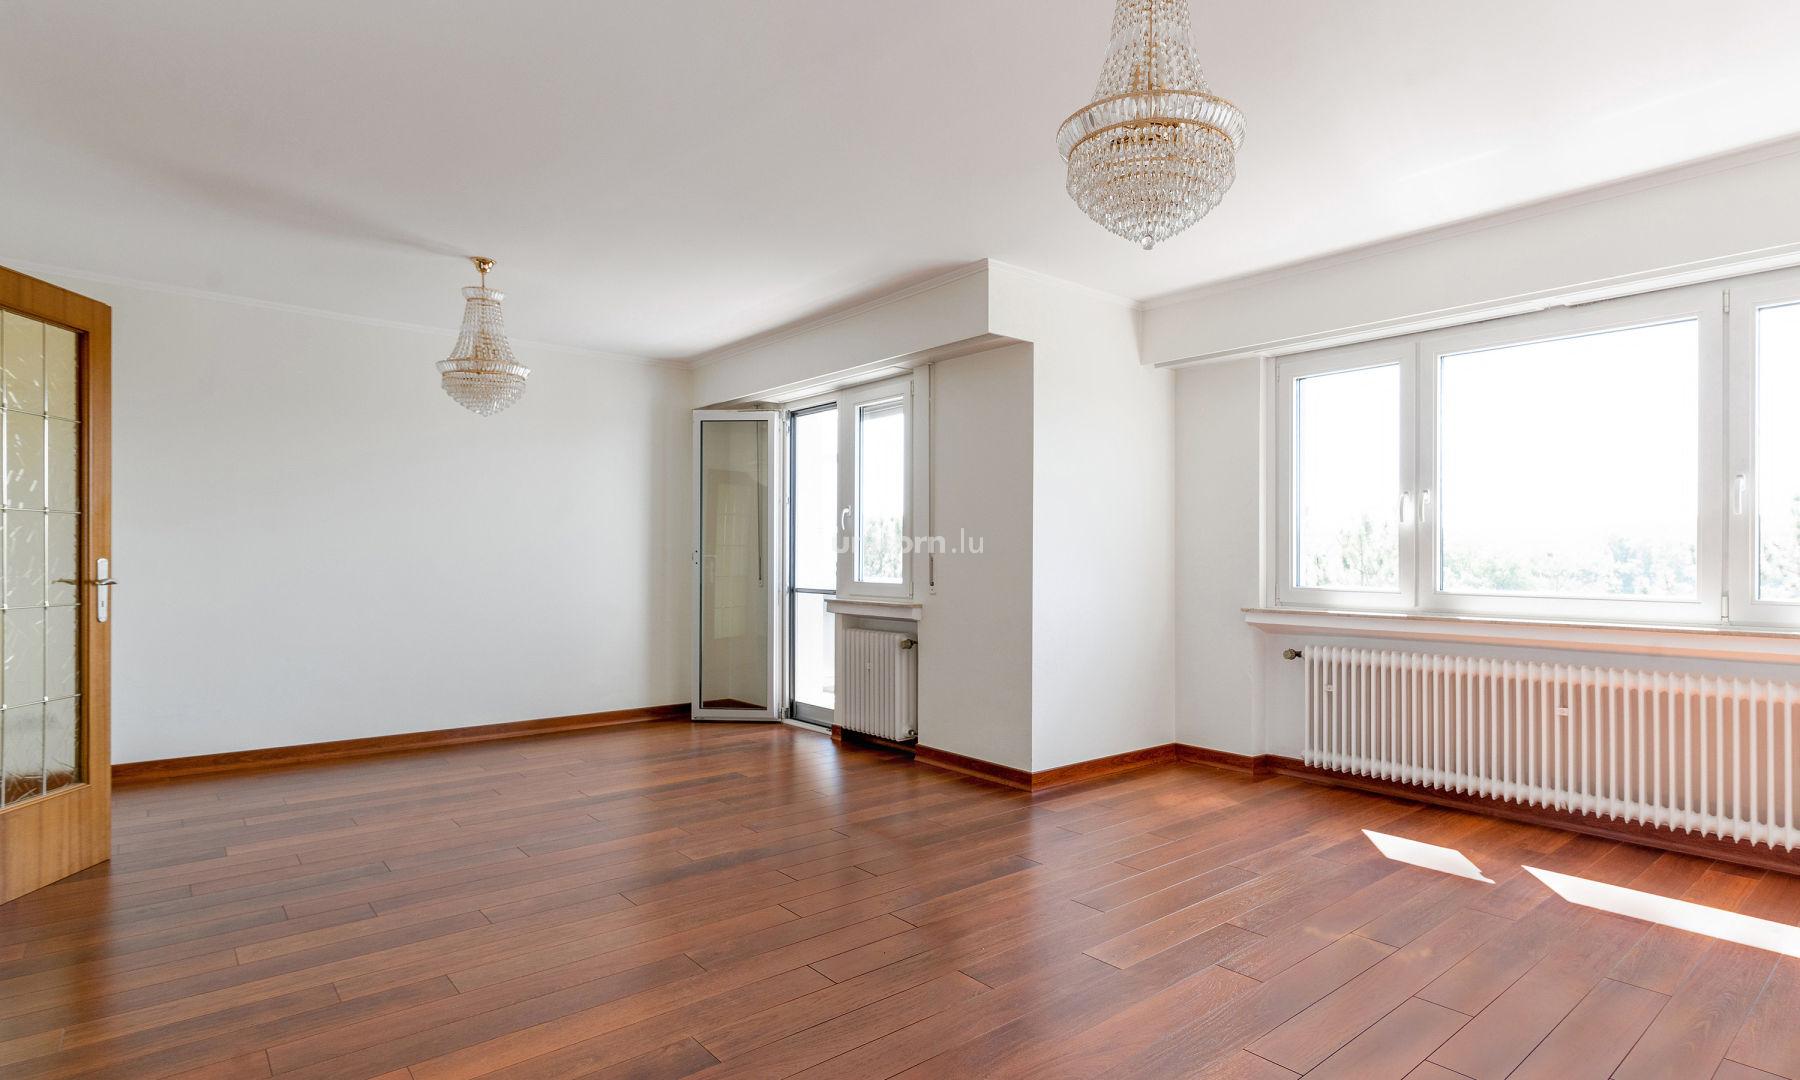 Wohnung zu verkaufen in Bertrange  - 95m²